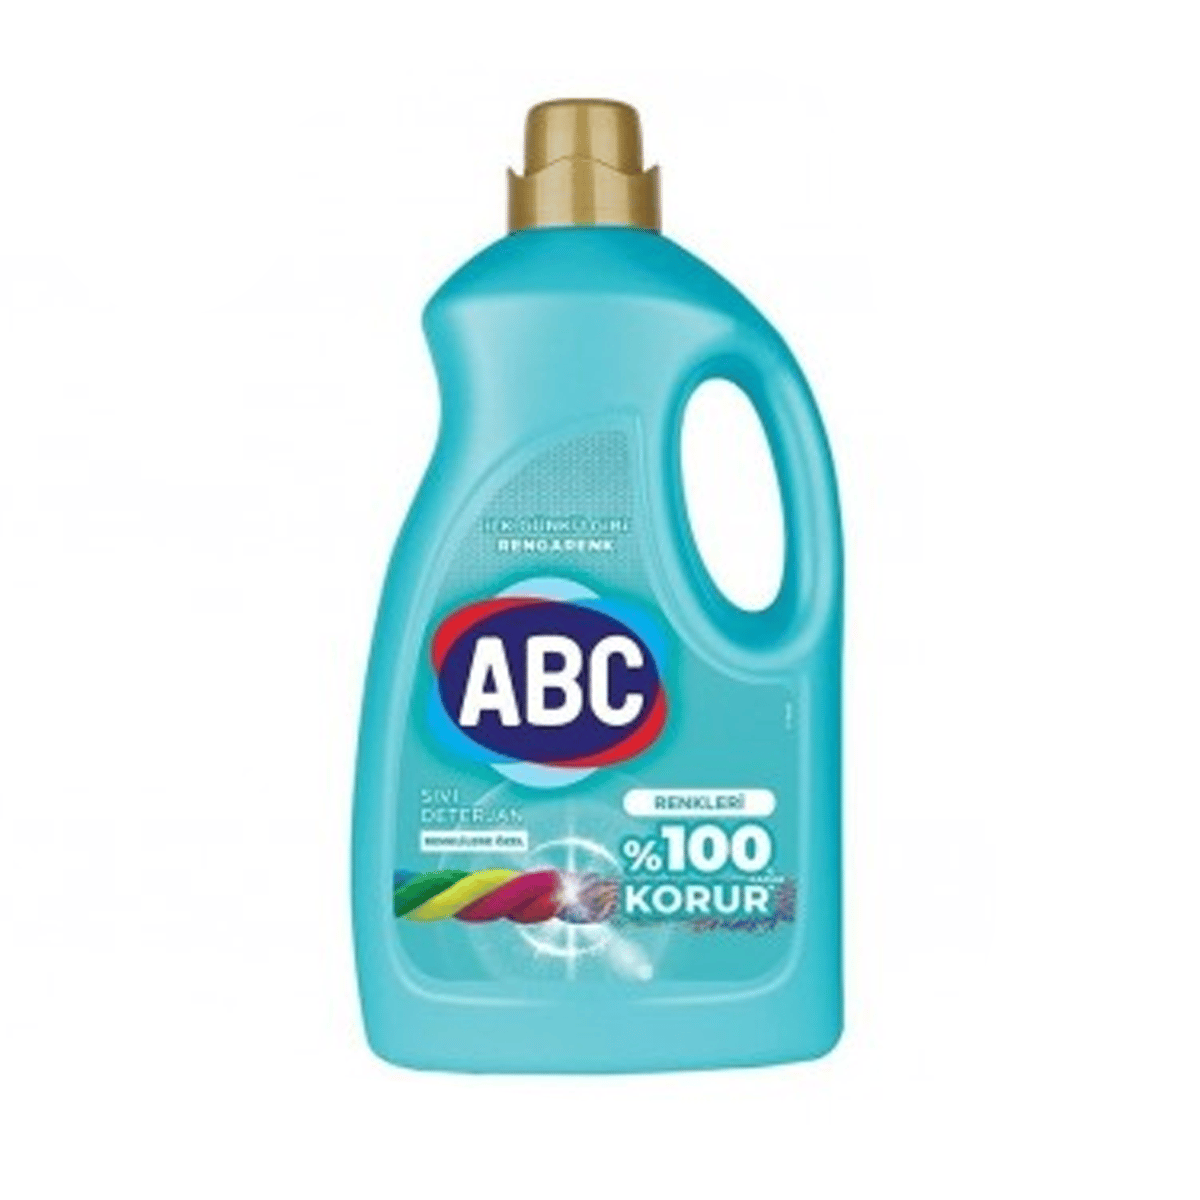 ABC Sıvı Çamaşır Deterjanı Renkliler 2700 Ml